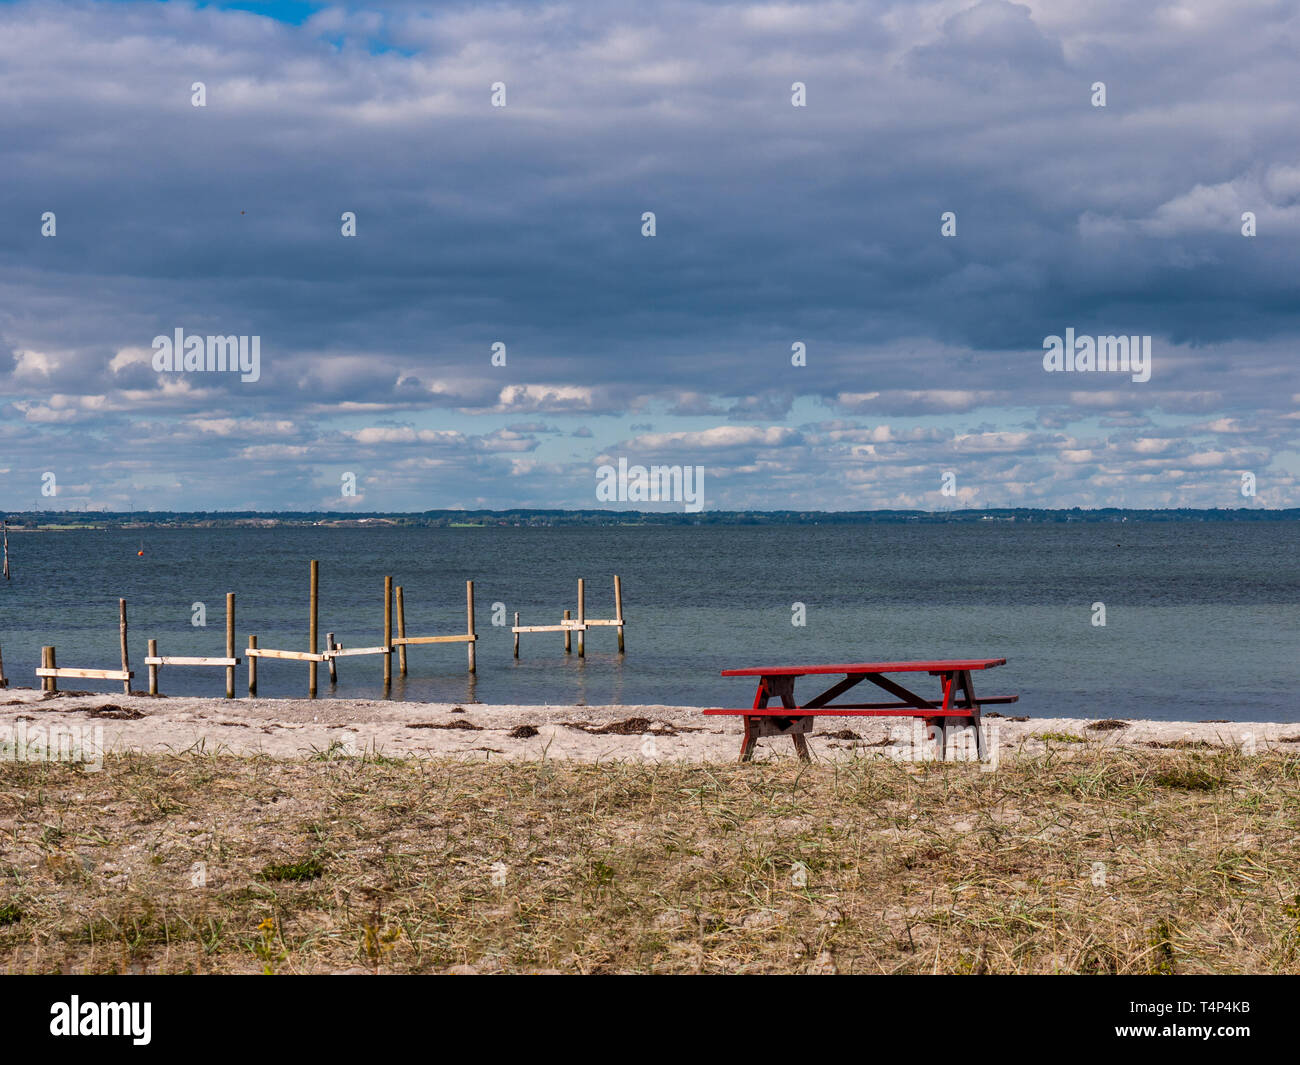 La table de pique-nique sur une plage de sable fin avec la mer Baltique dans l'arrière-plan sur l'île de Langeland, Danemark Banque D'Images